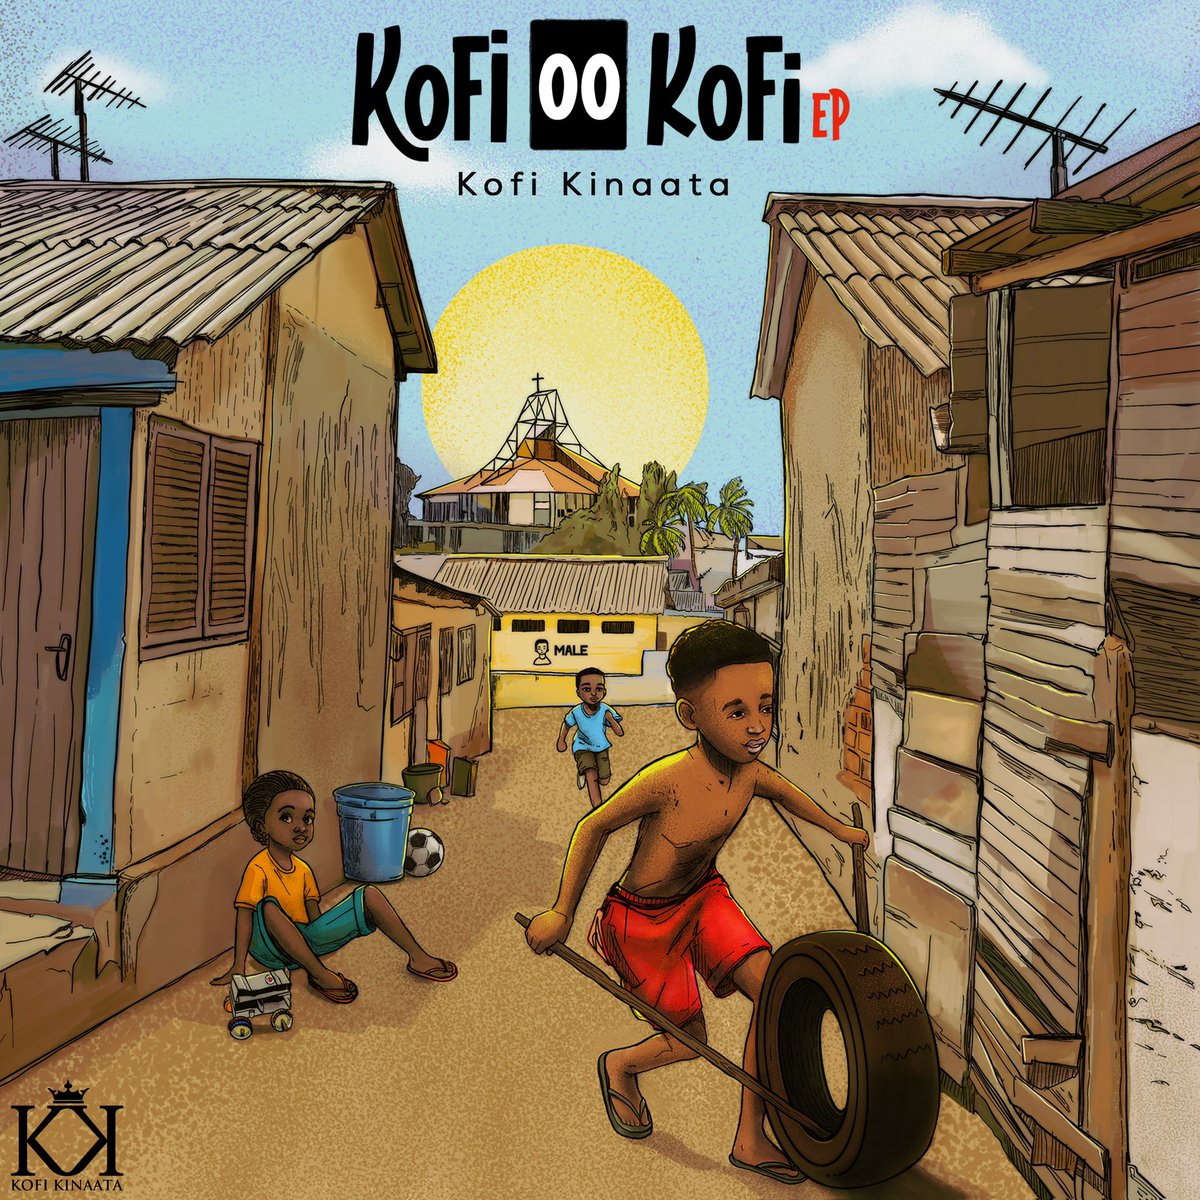 #KofiooKofi 🔥🔥